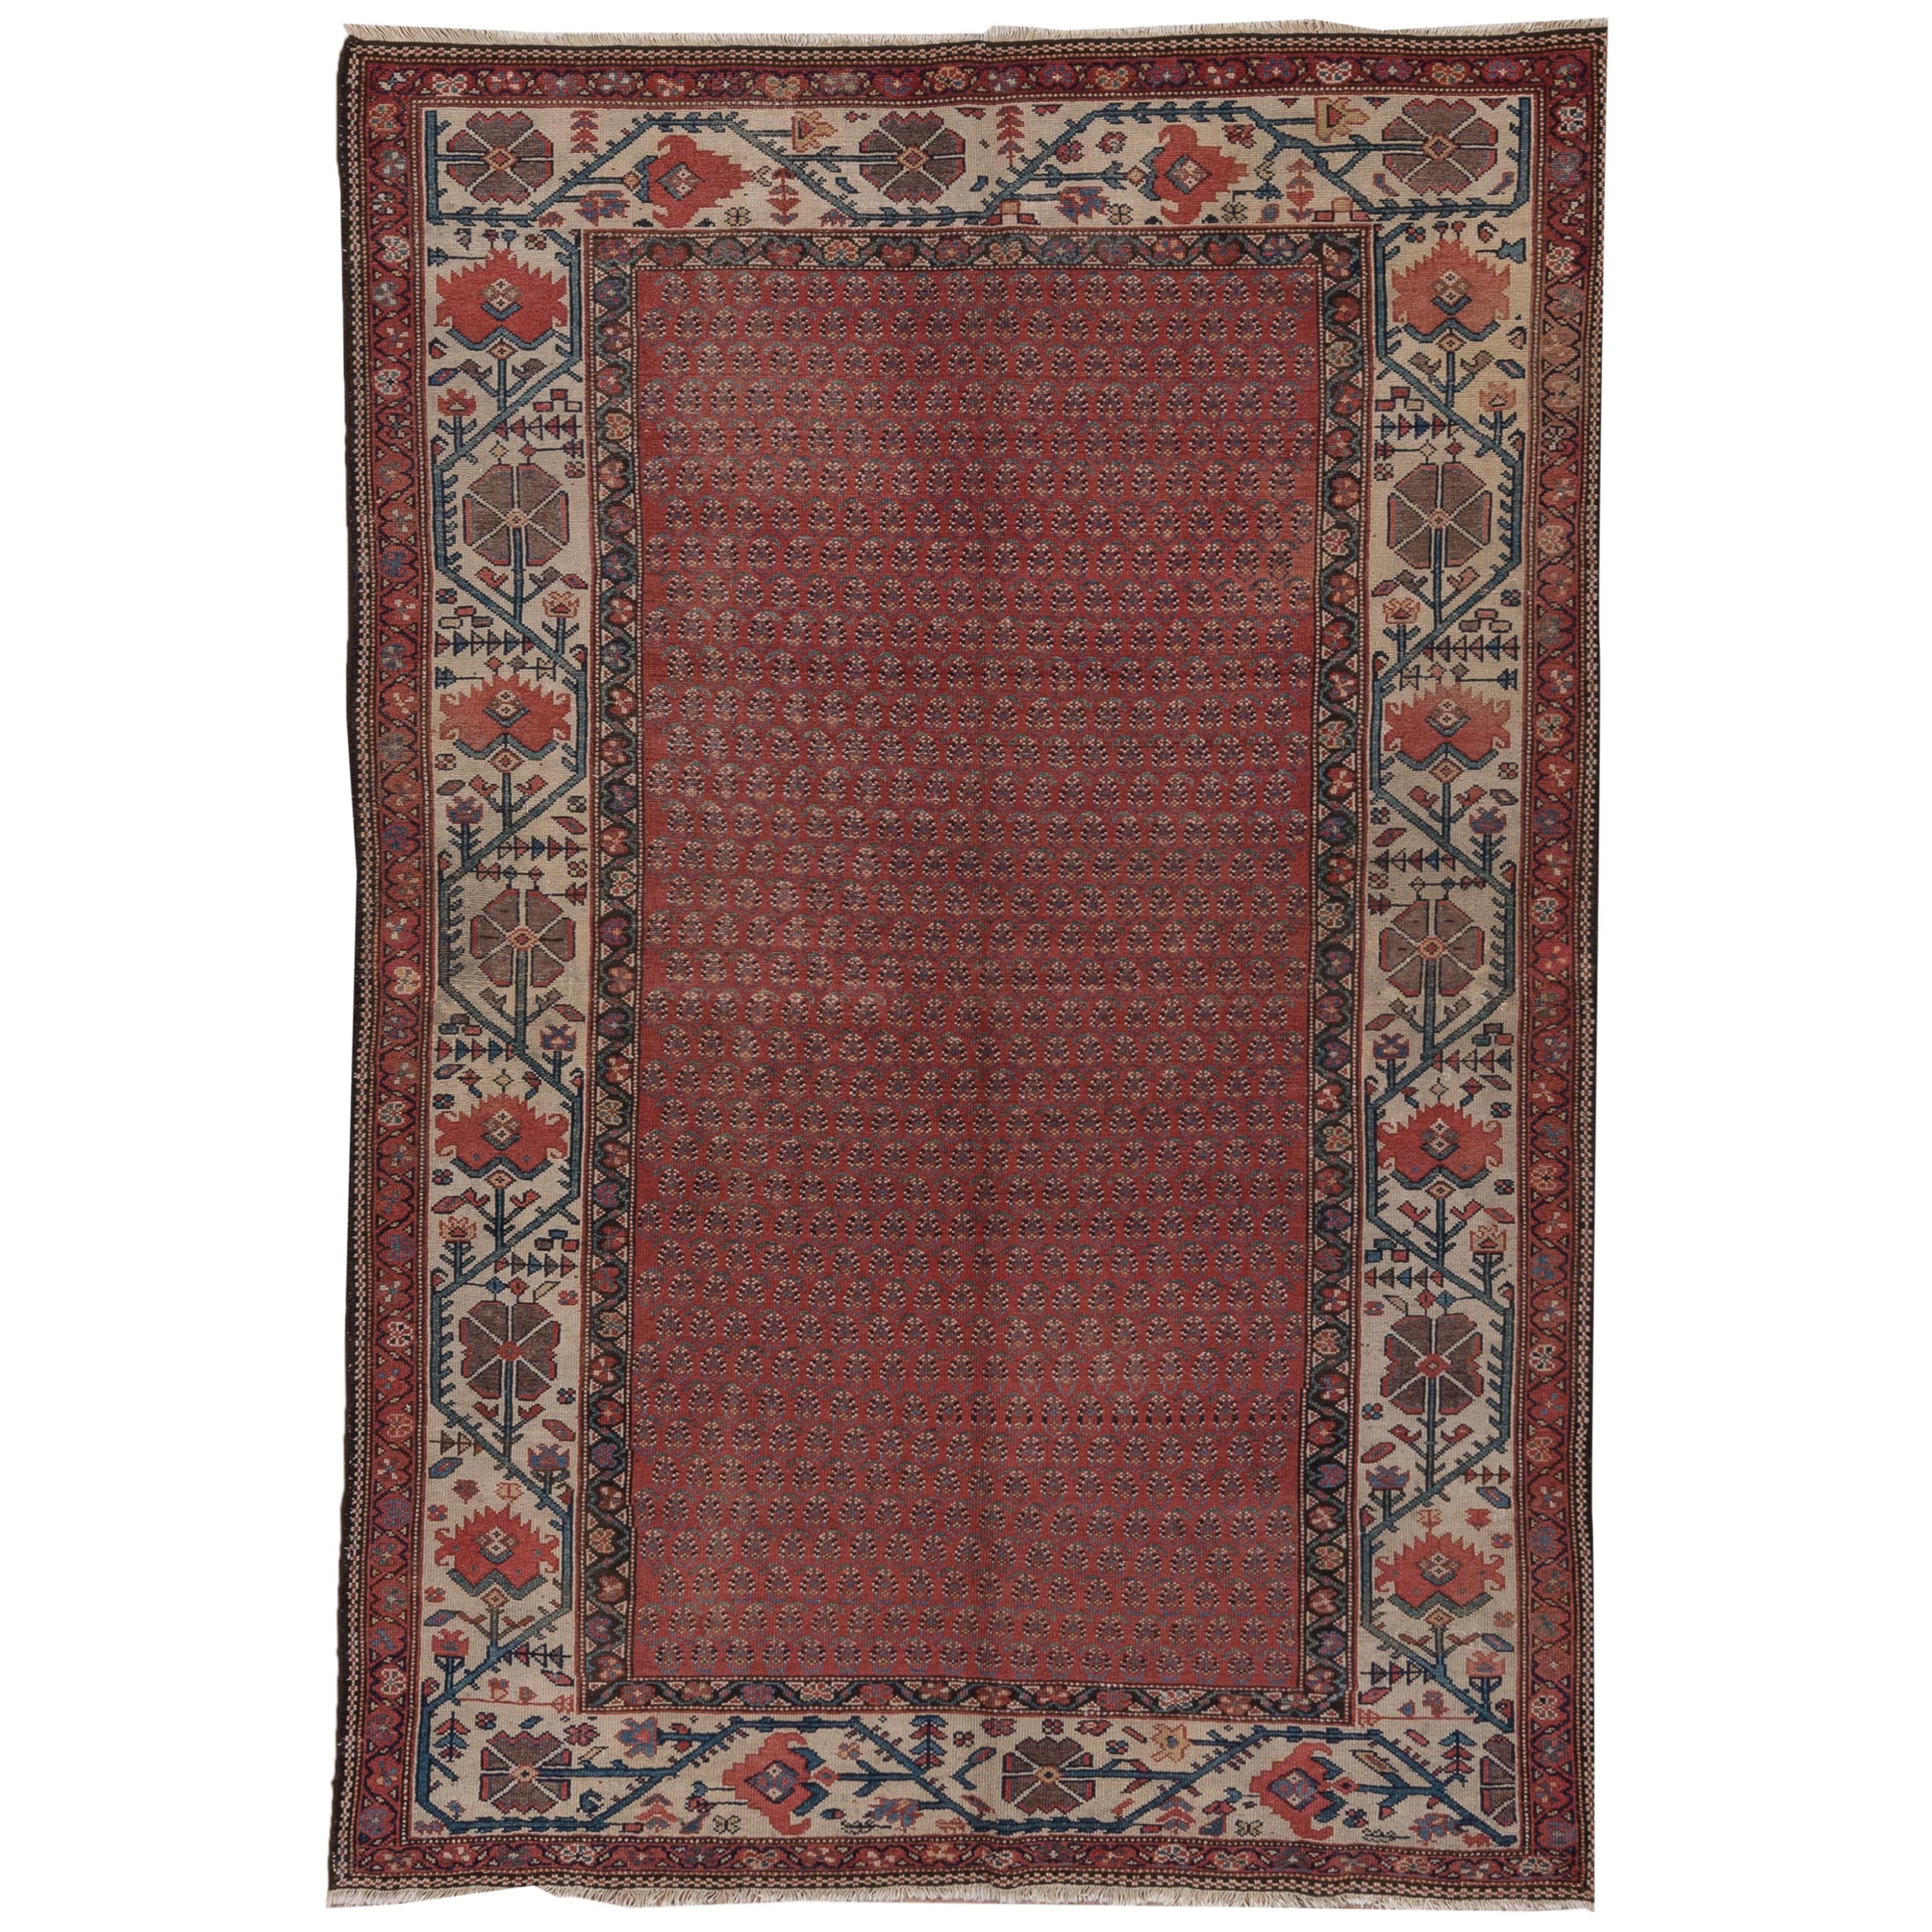 Antiker persischer Malayer-Teppich, rotes All-Over-Feld, elfenbeinfarbene Bordüren, um 1920